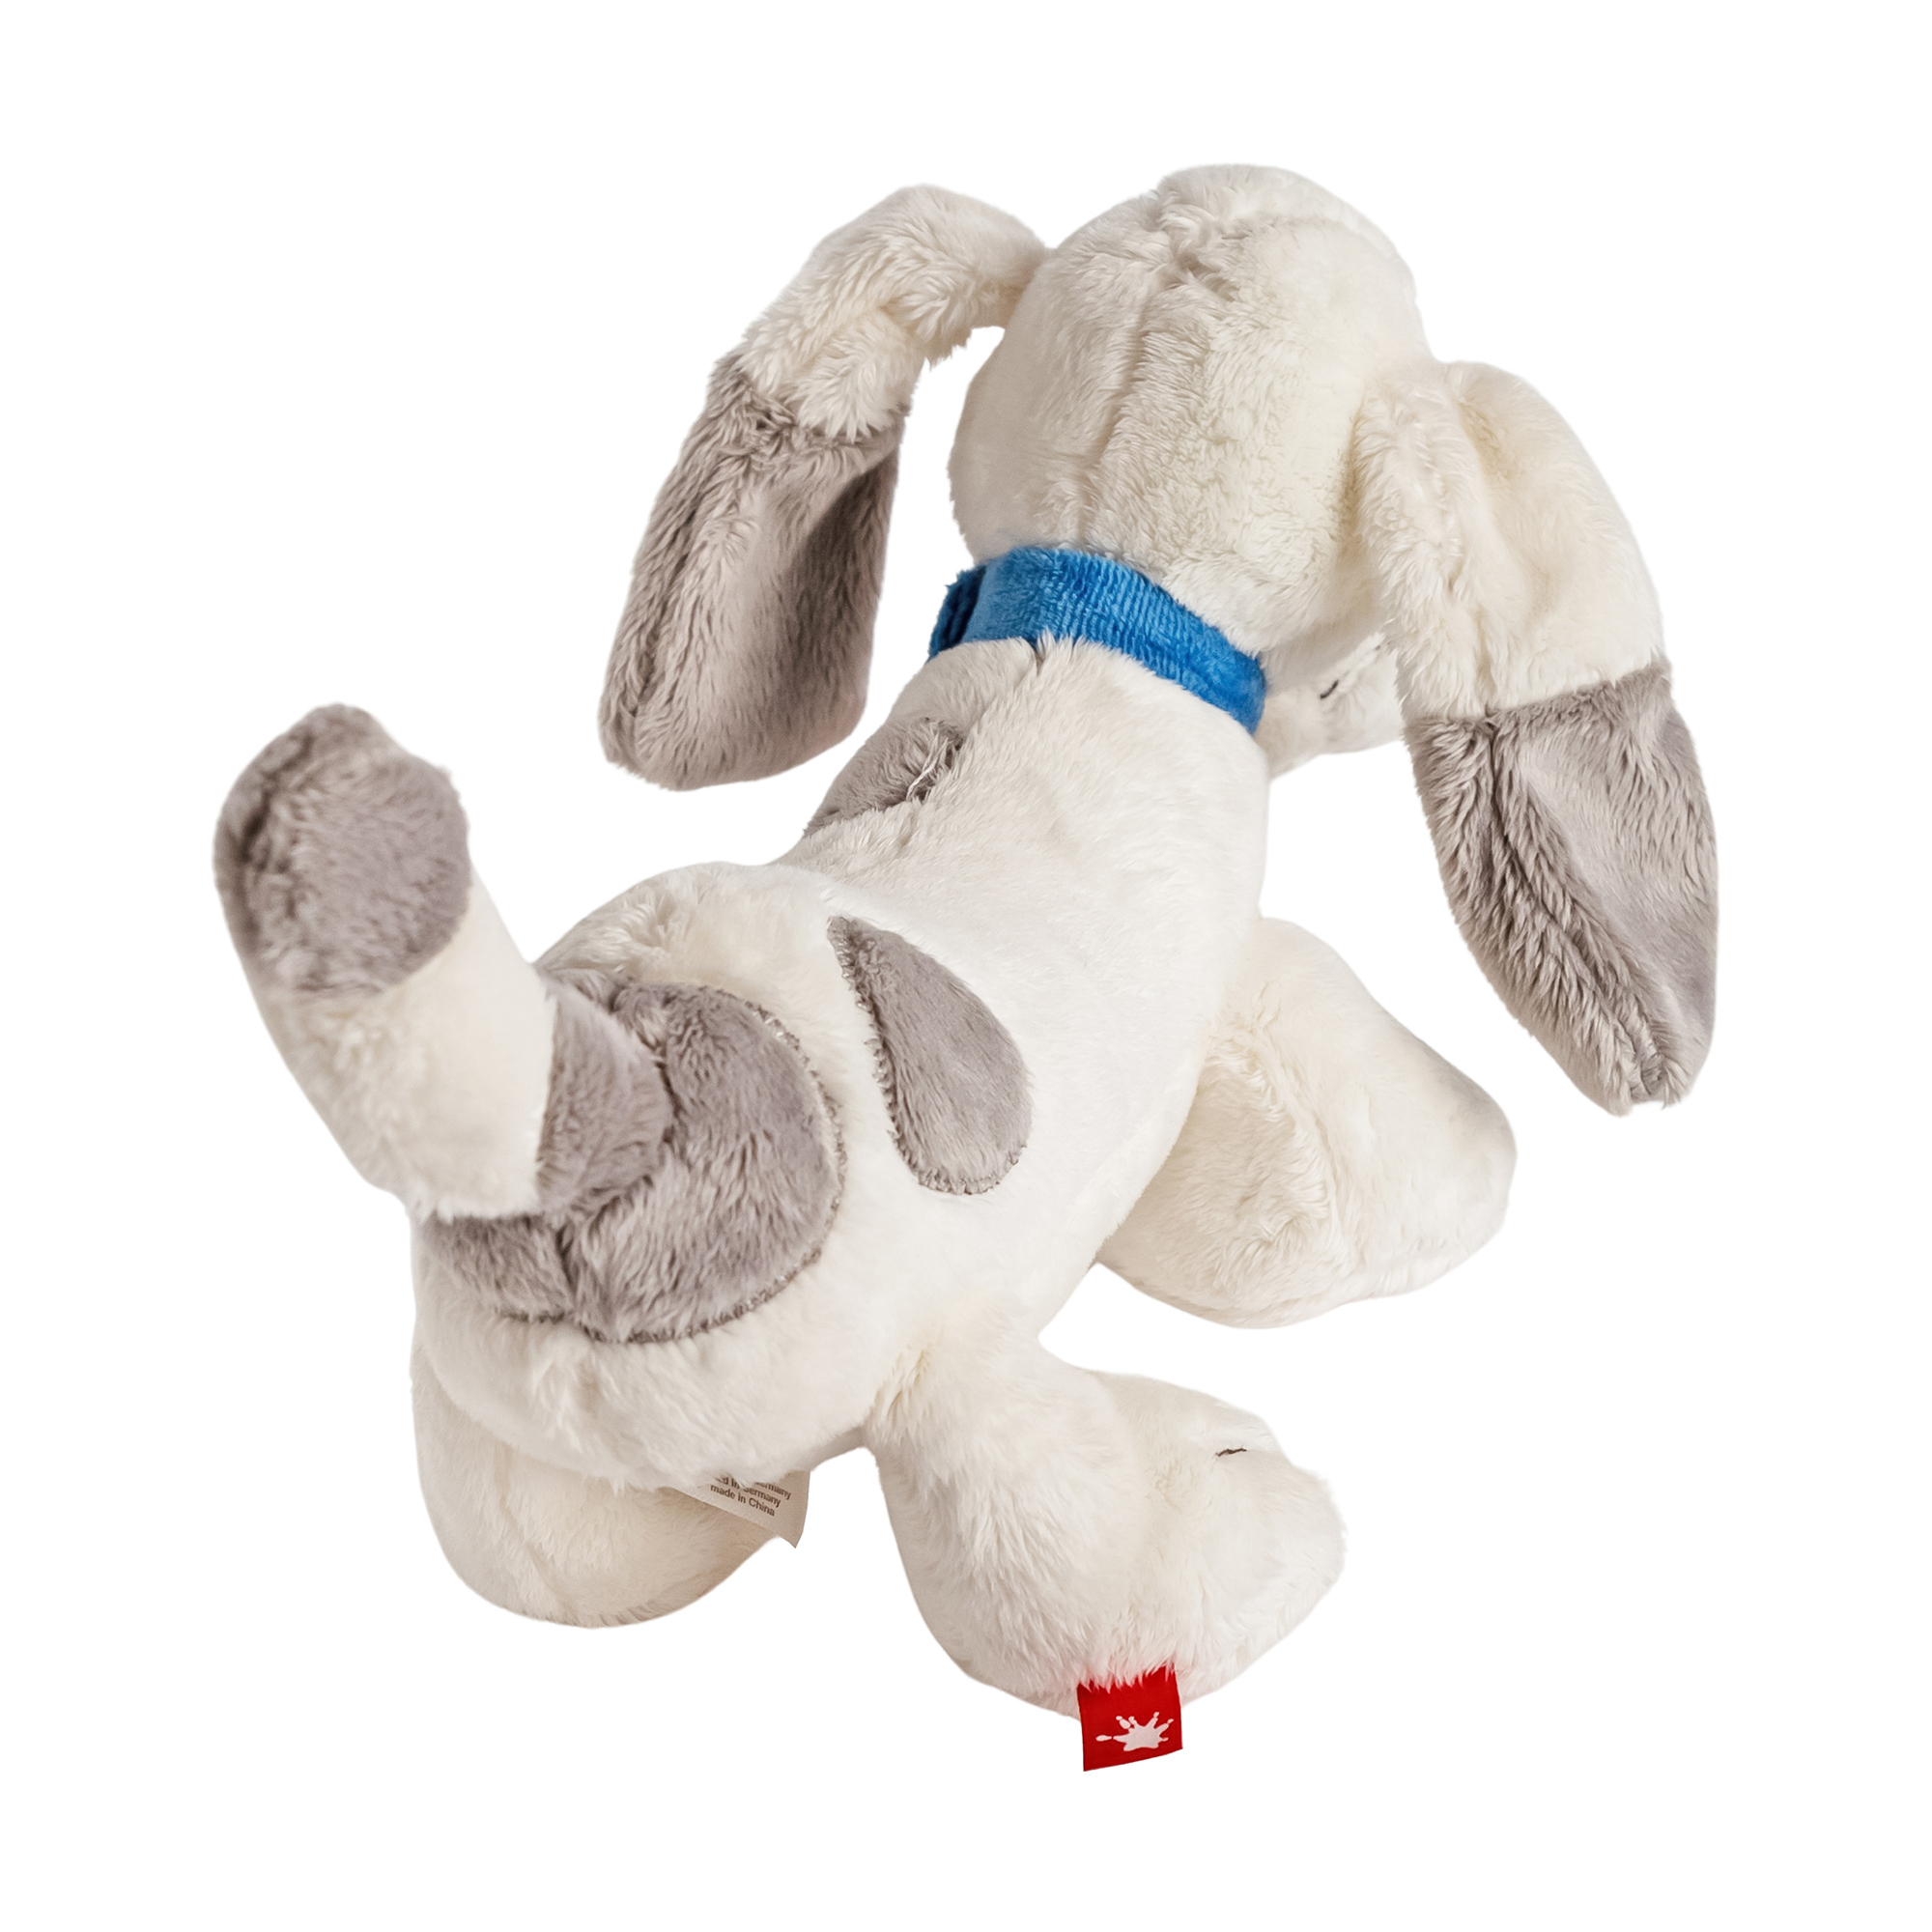 Floppy-eared plush dog Helmut